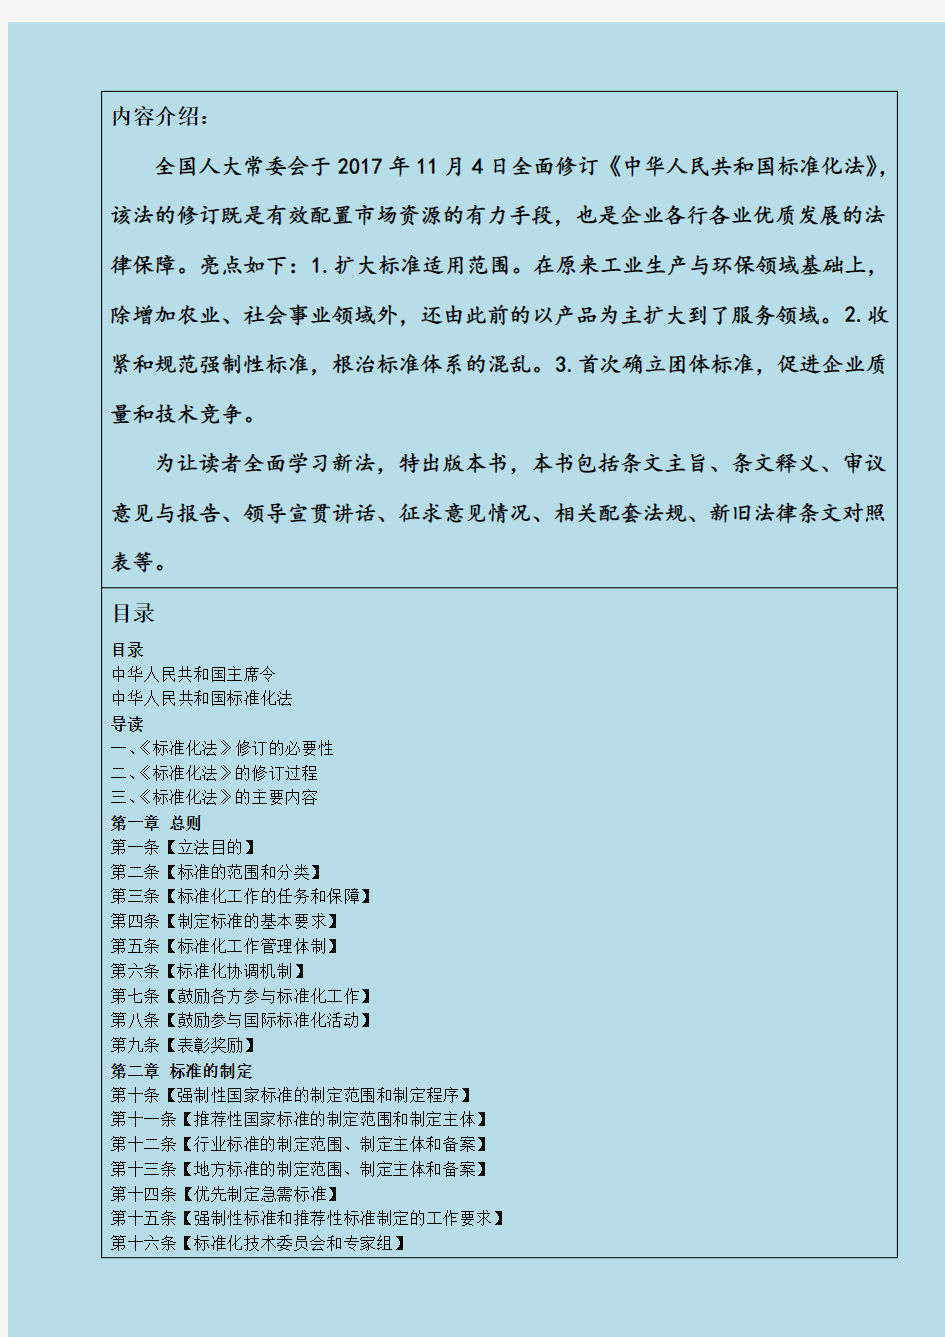 【电子版】中华人民共和国标准化法释义